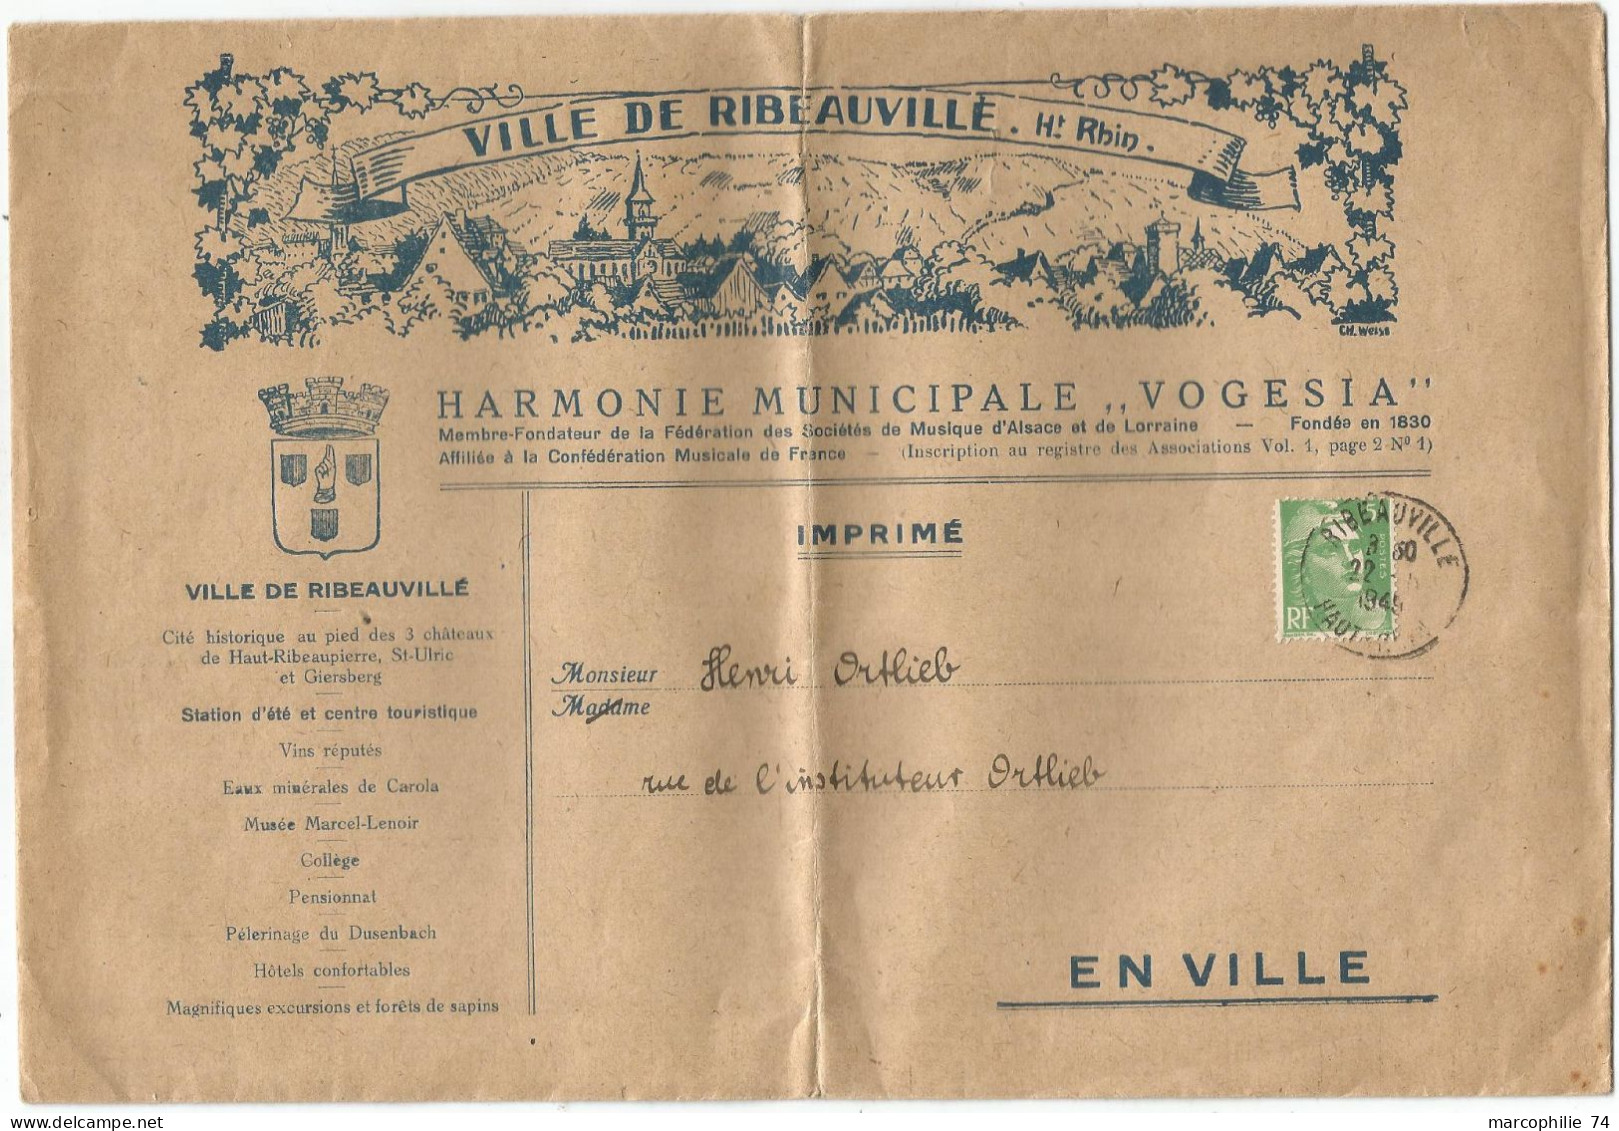 GANDON 5FR N°809 SEUL  GRANDE LETTRE ENTETE VILLE DE RIBEAUVILLE HAUT RHIN HARMONIE VOGESIA 1949 TARIF IMPRIME - 1945-54 Marianna Di Gandon